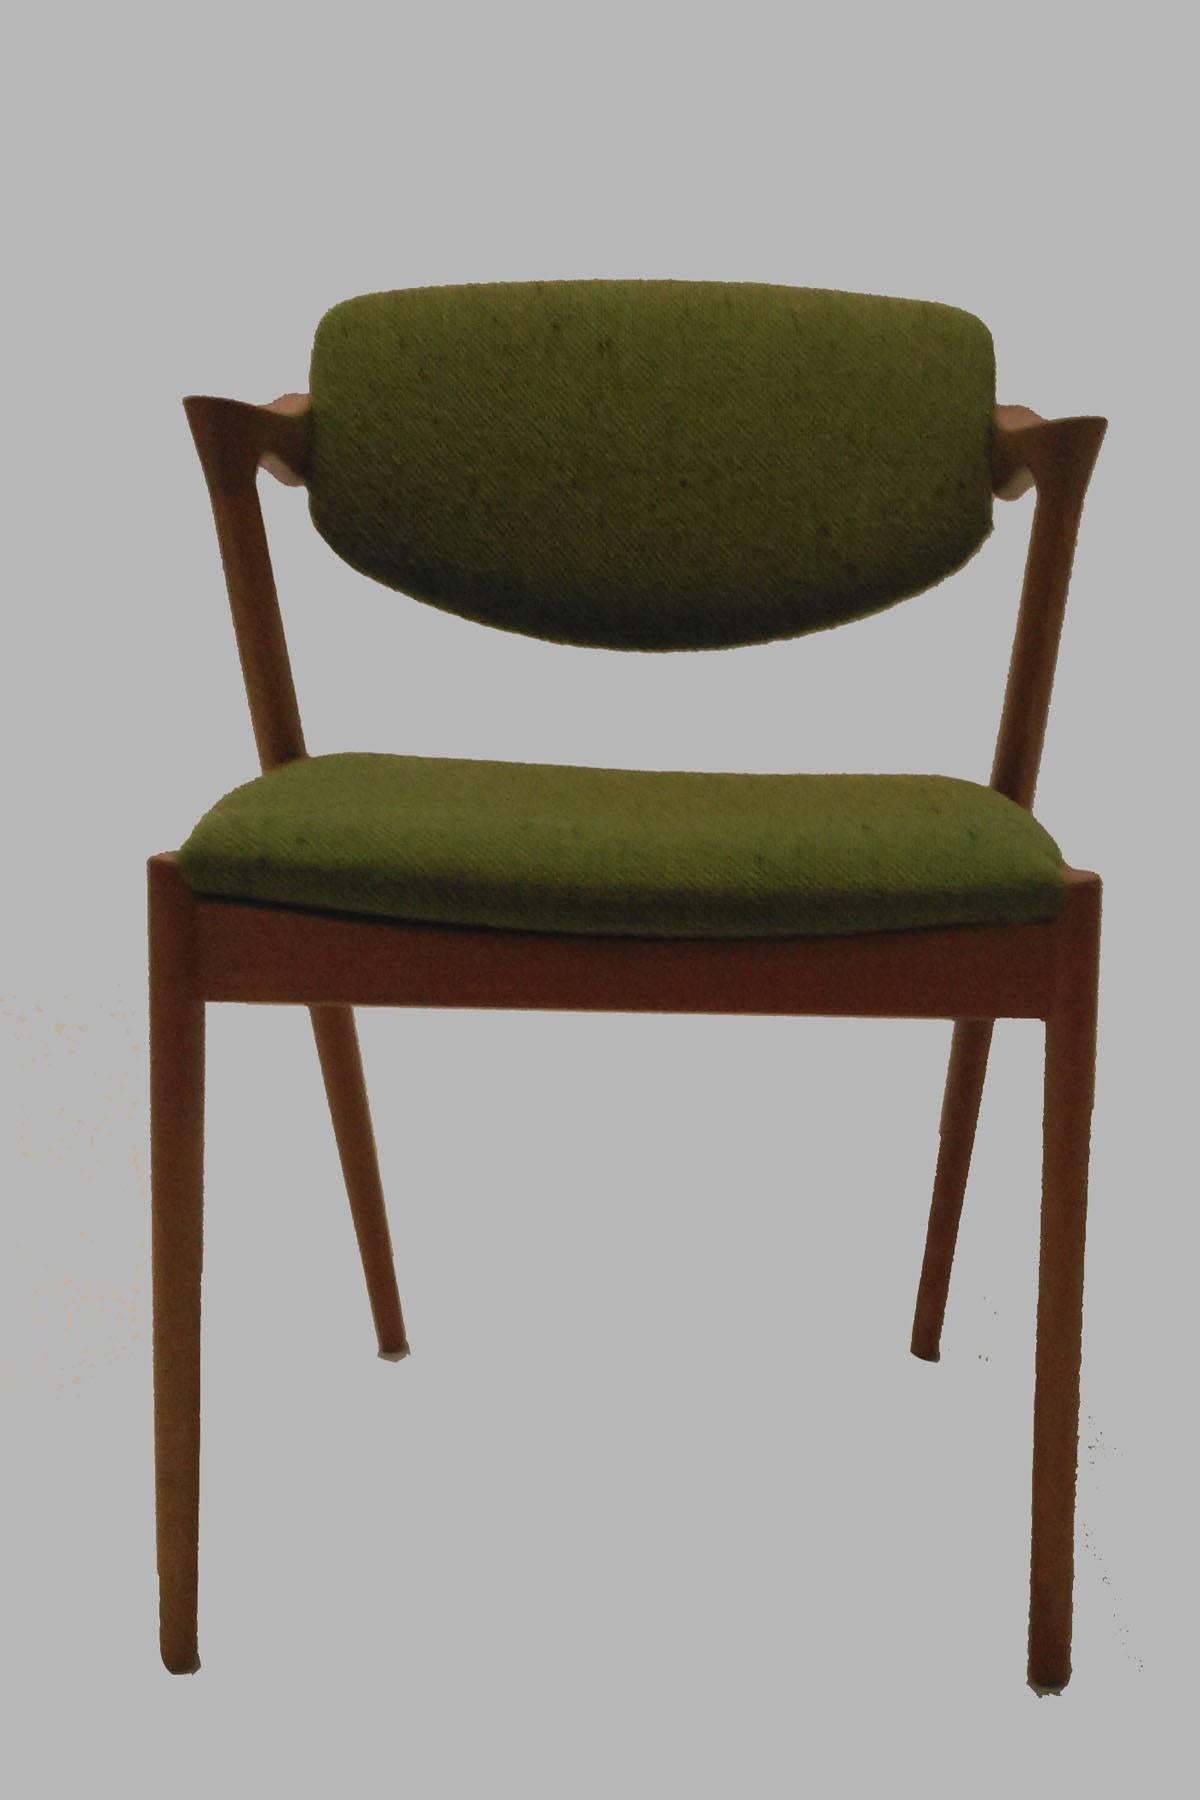 12 Esszimmerstühle aus Eiche Modell 42 mit drehbarer Rückenlehne von Kai Kristiansen für Schous Møbelfabrik.

Die Stühle haben Kai Kristiansens typisches, leichtes und elegantes Design, das sie leicht in Ihr Zuhause einfügen lässt,

Die Stühle